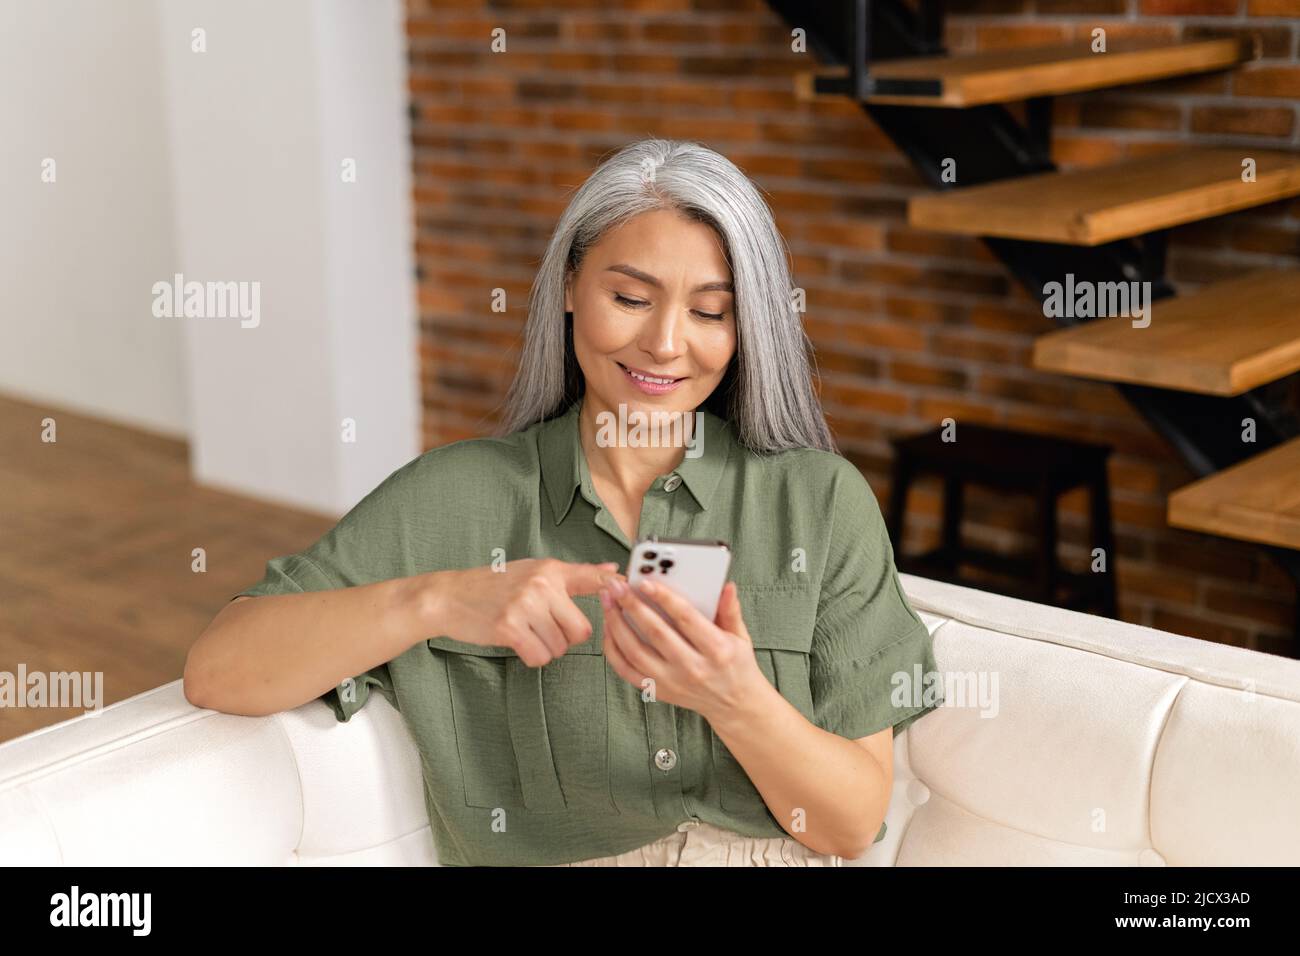 Ruhige ältere Dame, die in entspannter Pose auf der bequemen Couch mit einem Smartphone sitzt, verbringt die Frau ihre Freizeit damit, in den Neuigkeiten zu blättern und im Internet zu surfen Stockfoto